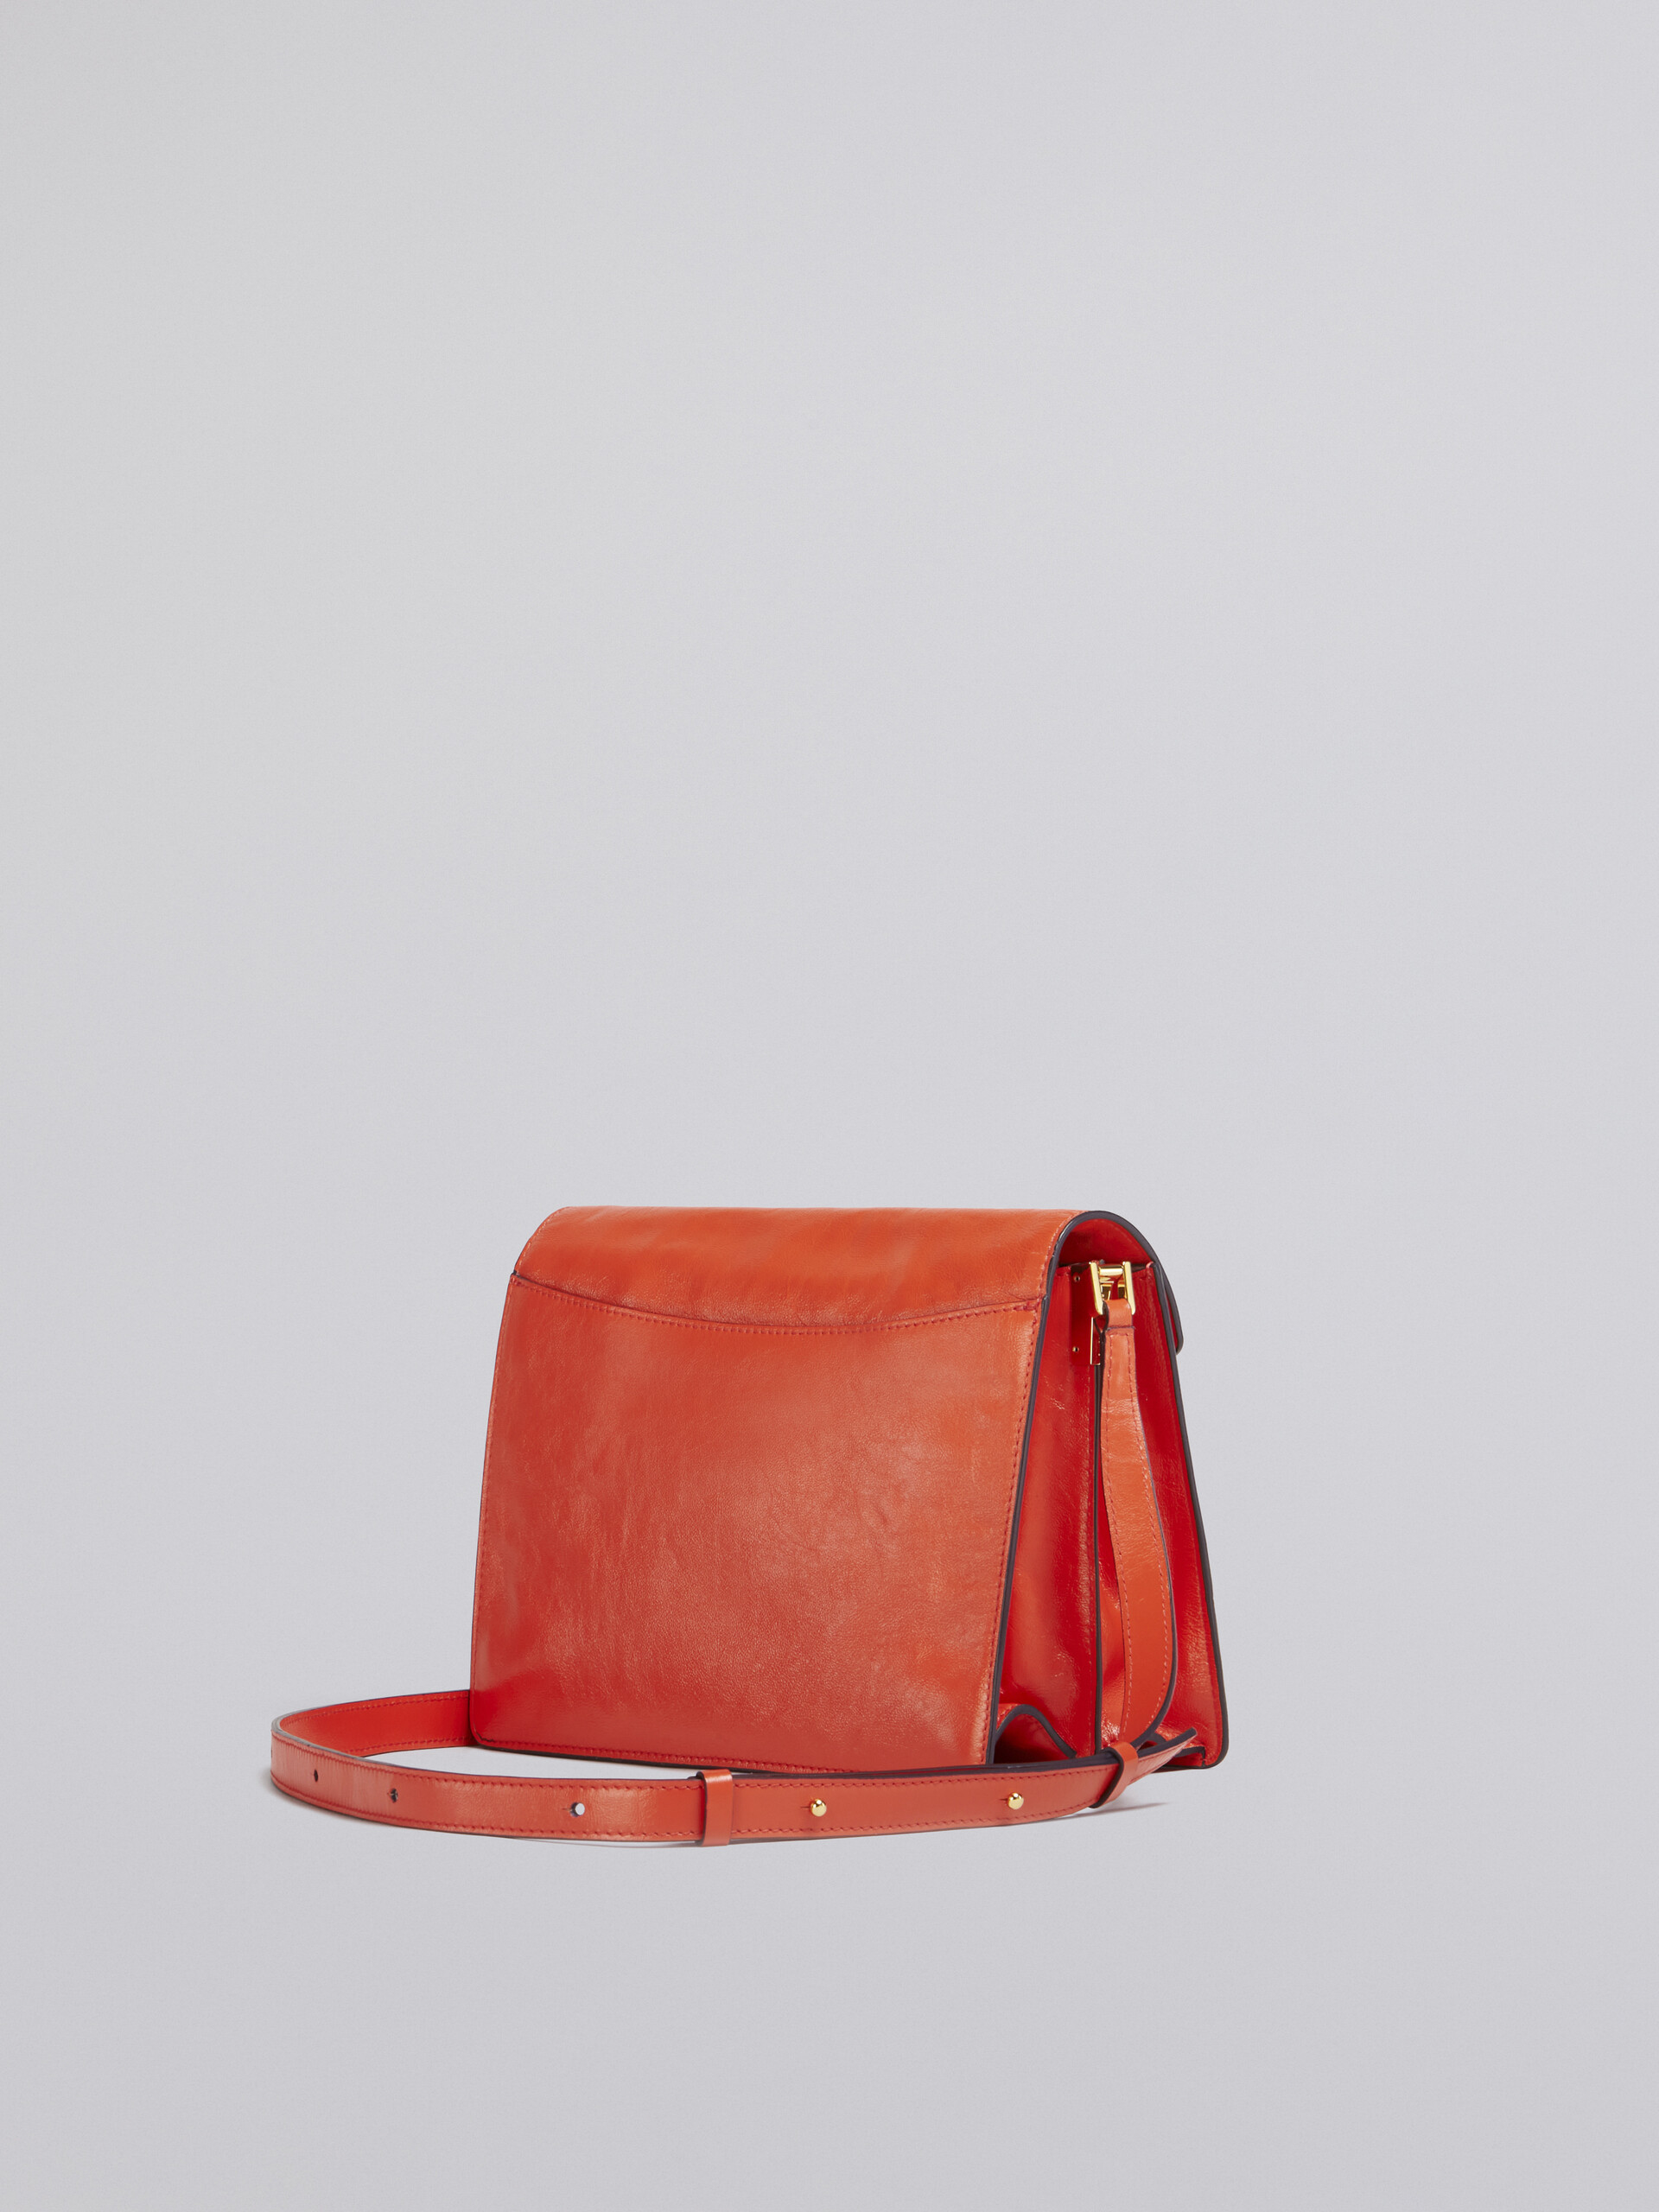 TRUNK SOFT large bag in orange leather - Shoulder Bag - Image 2